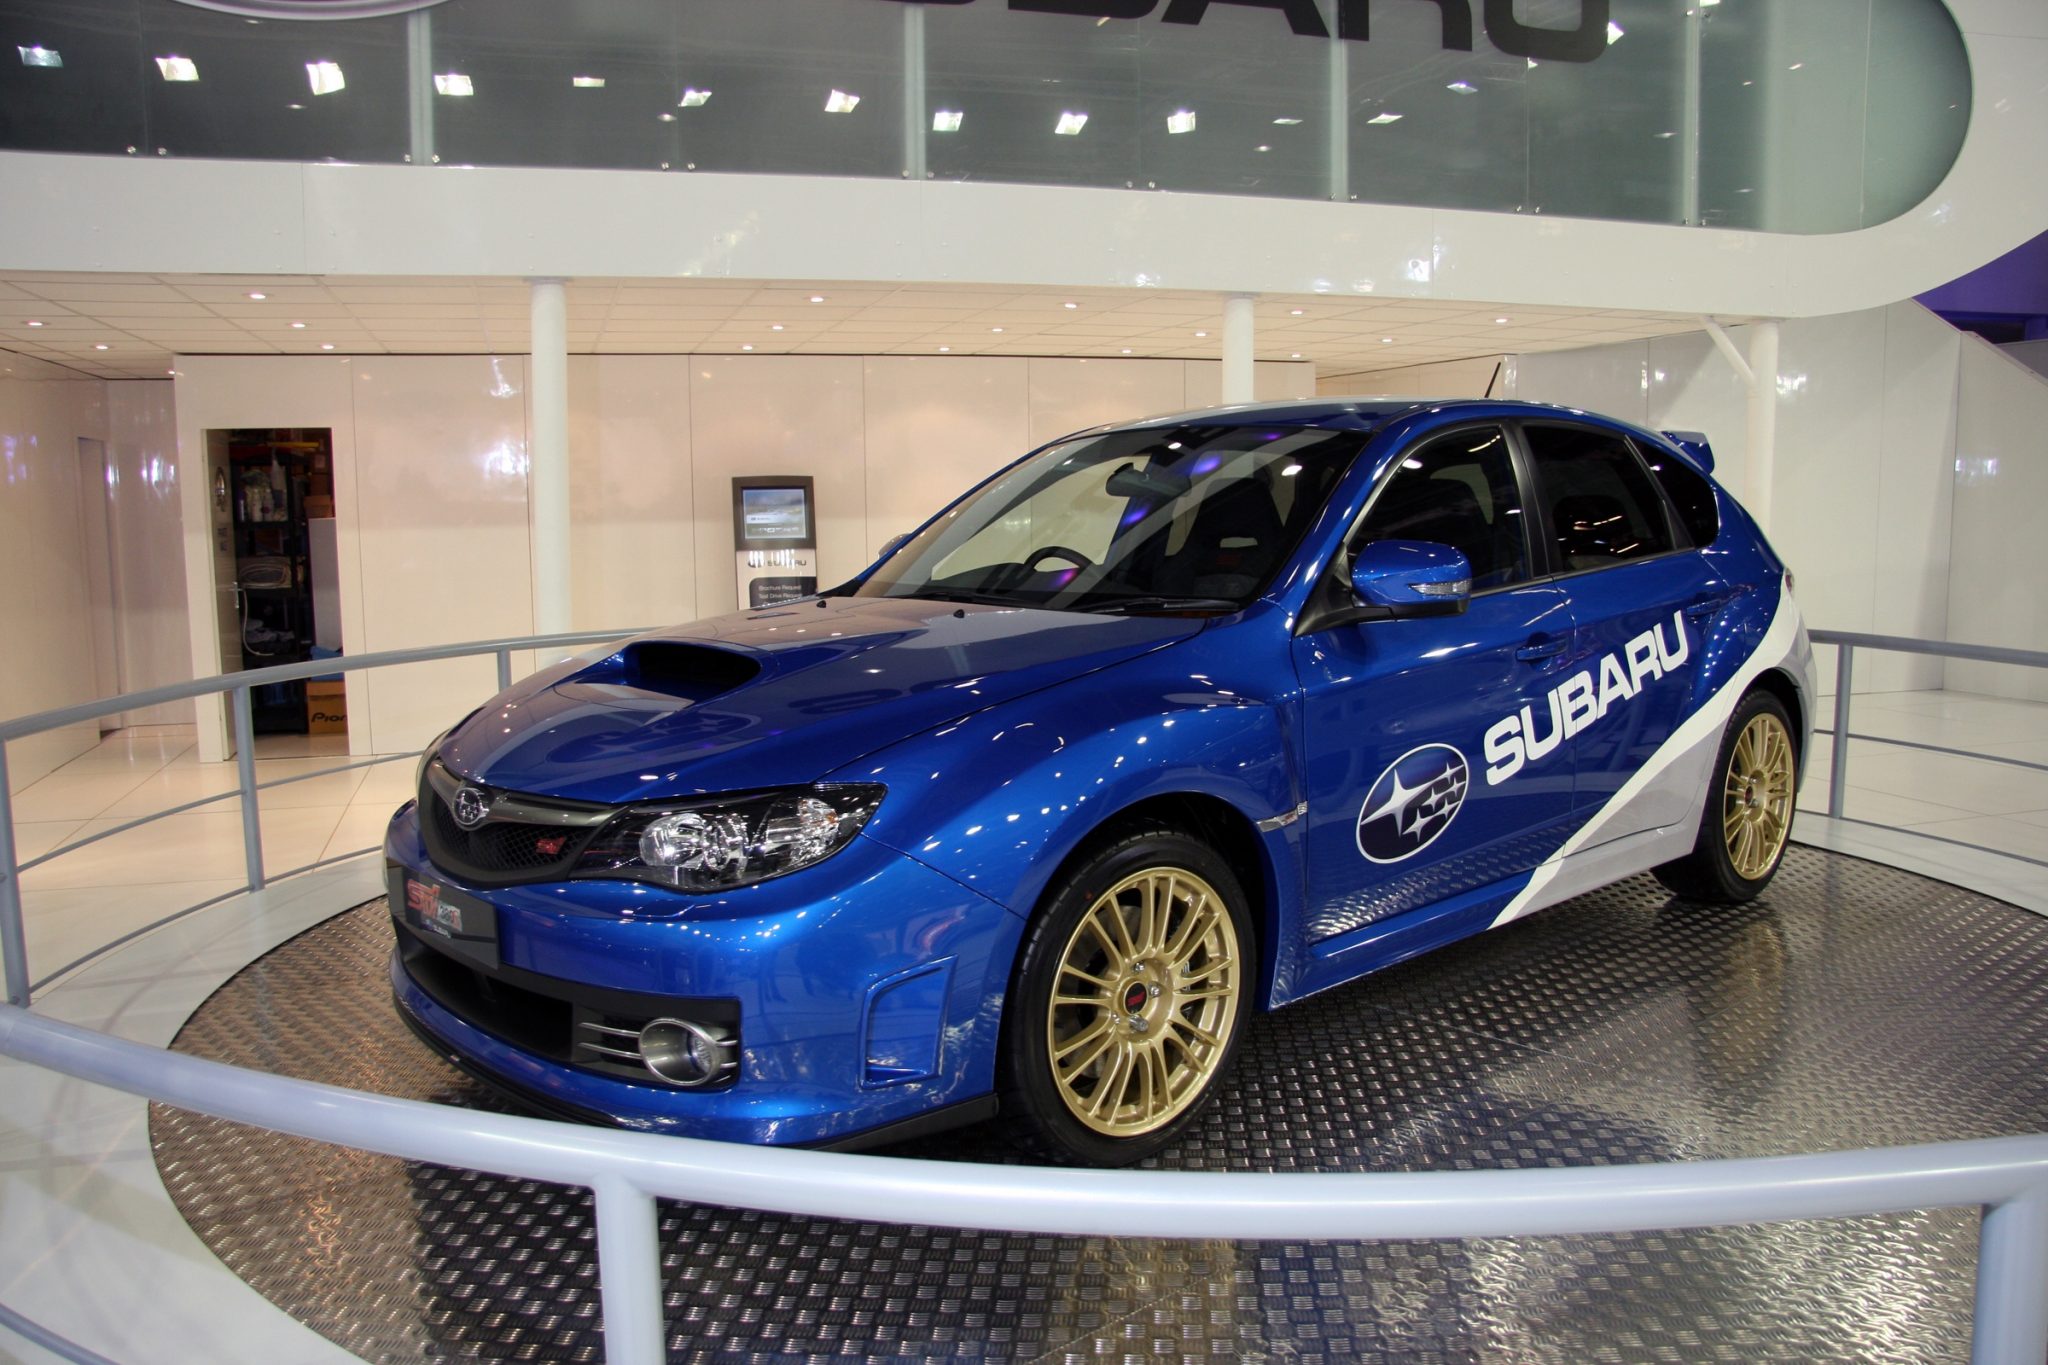 2008 Subaru WRX STI 380S Concept